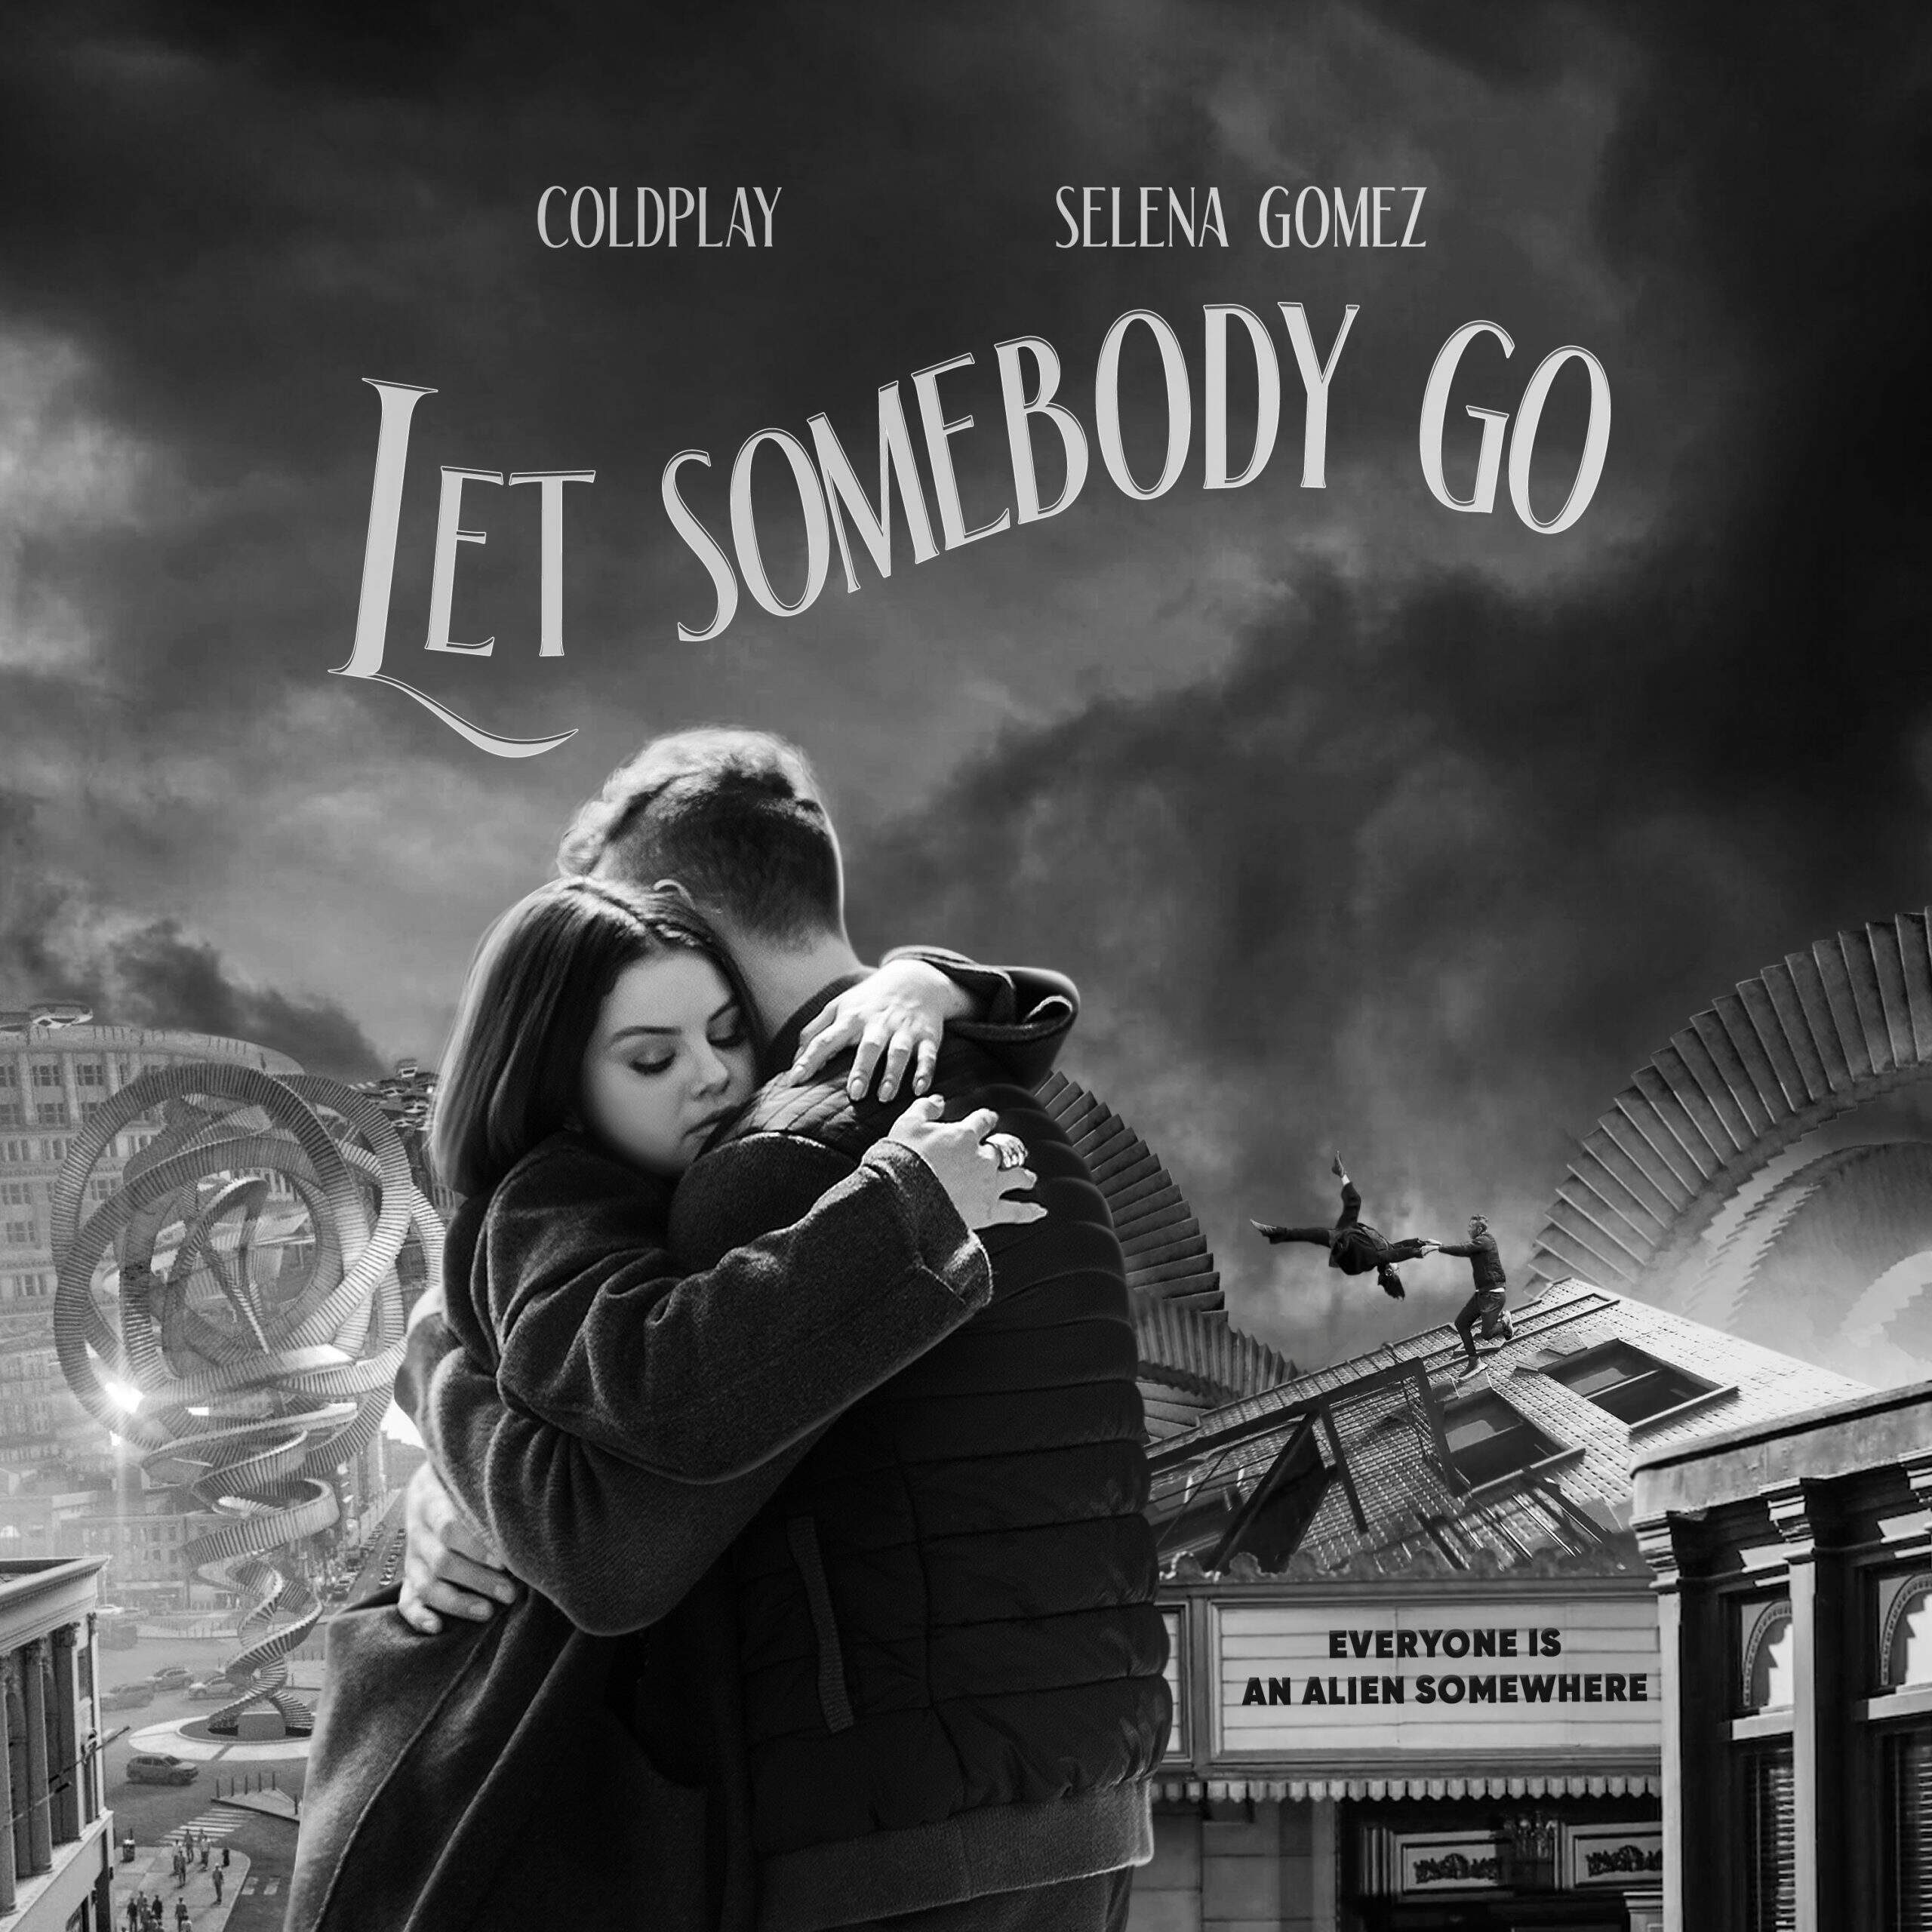 Let Somebody Go